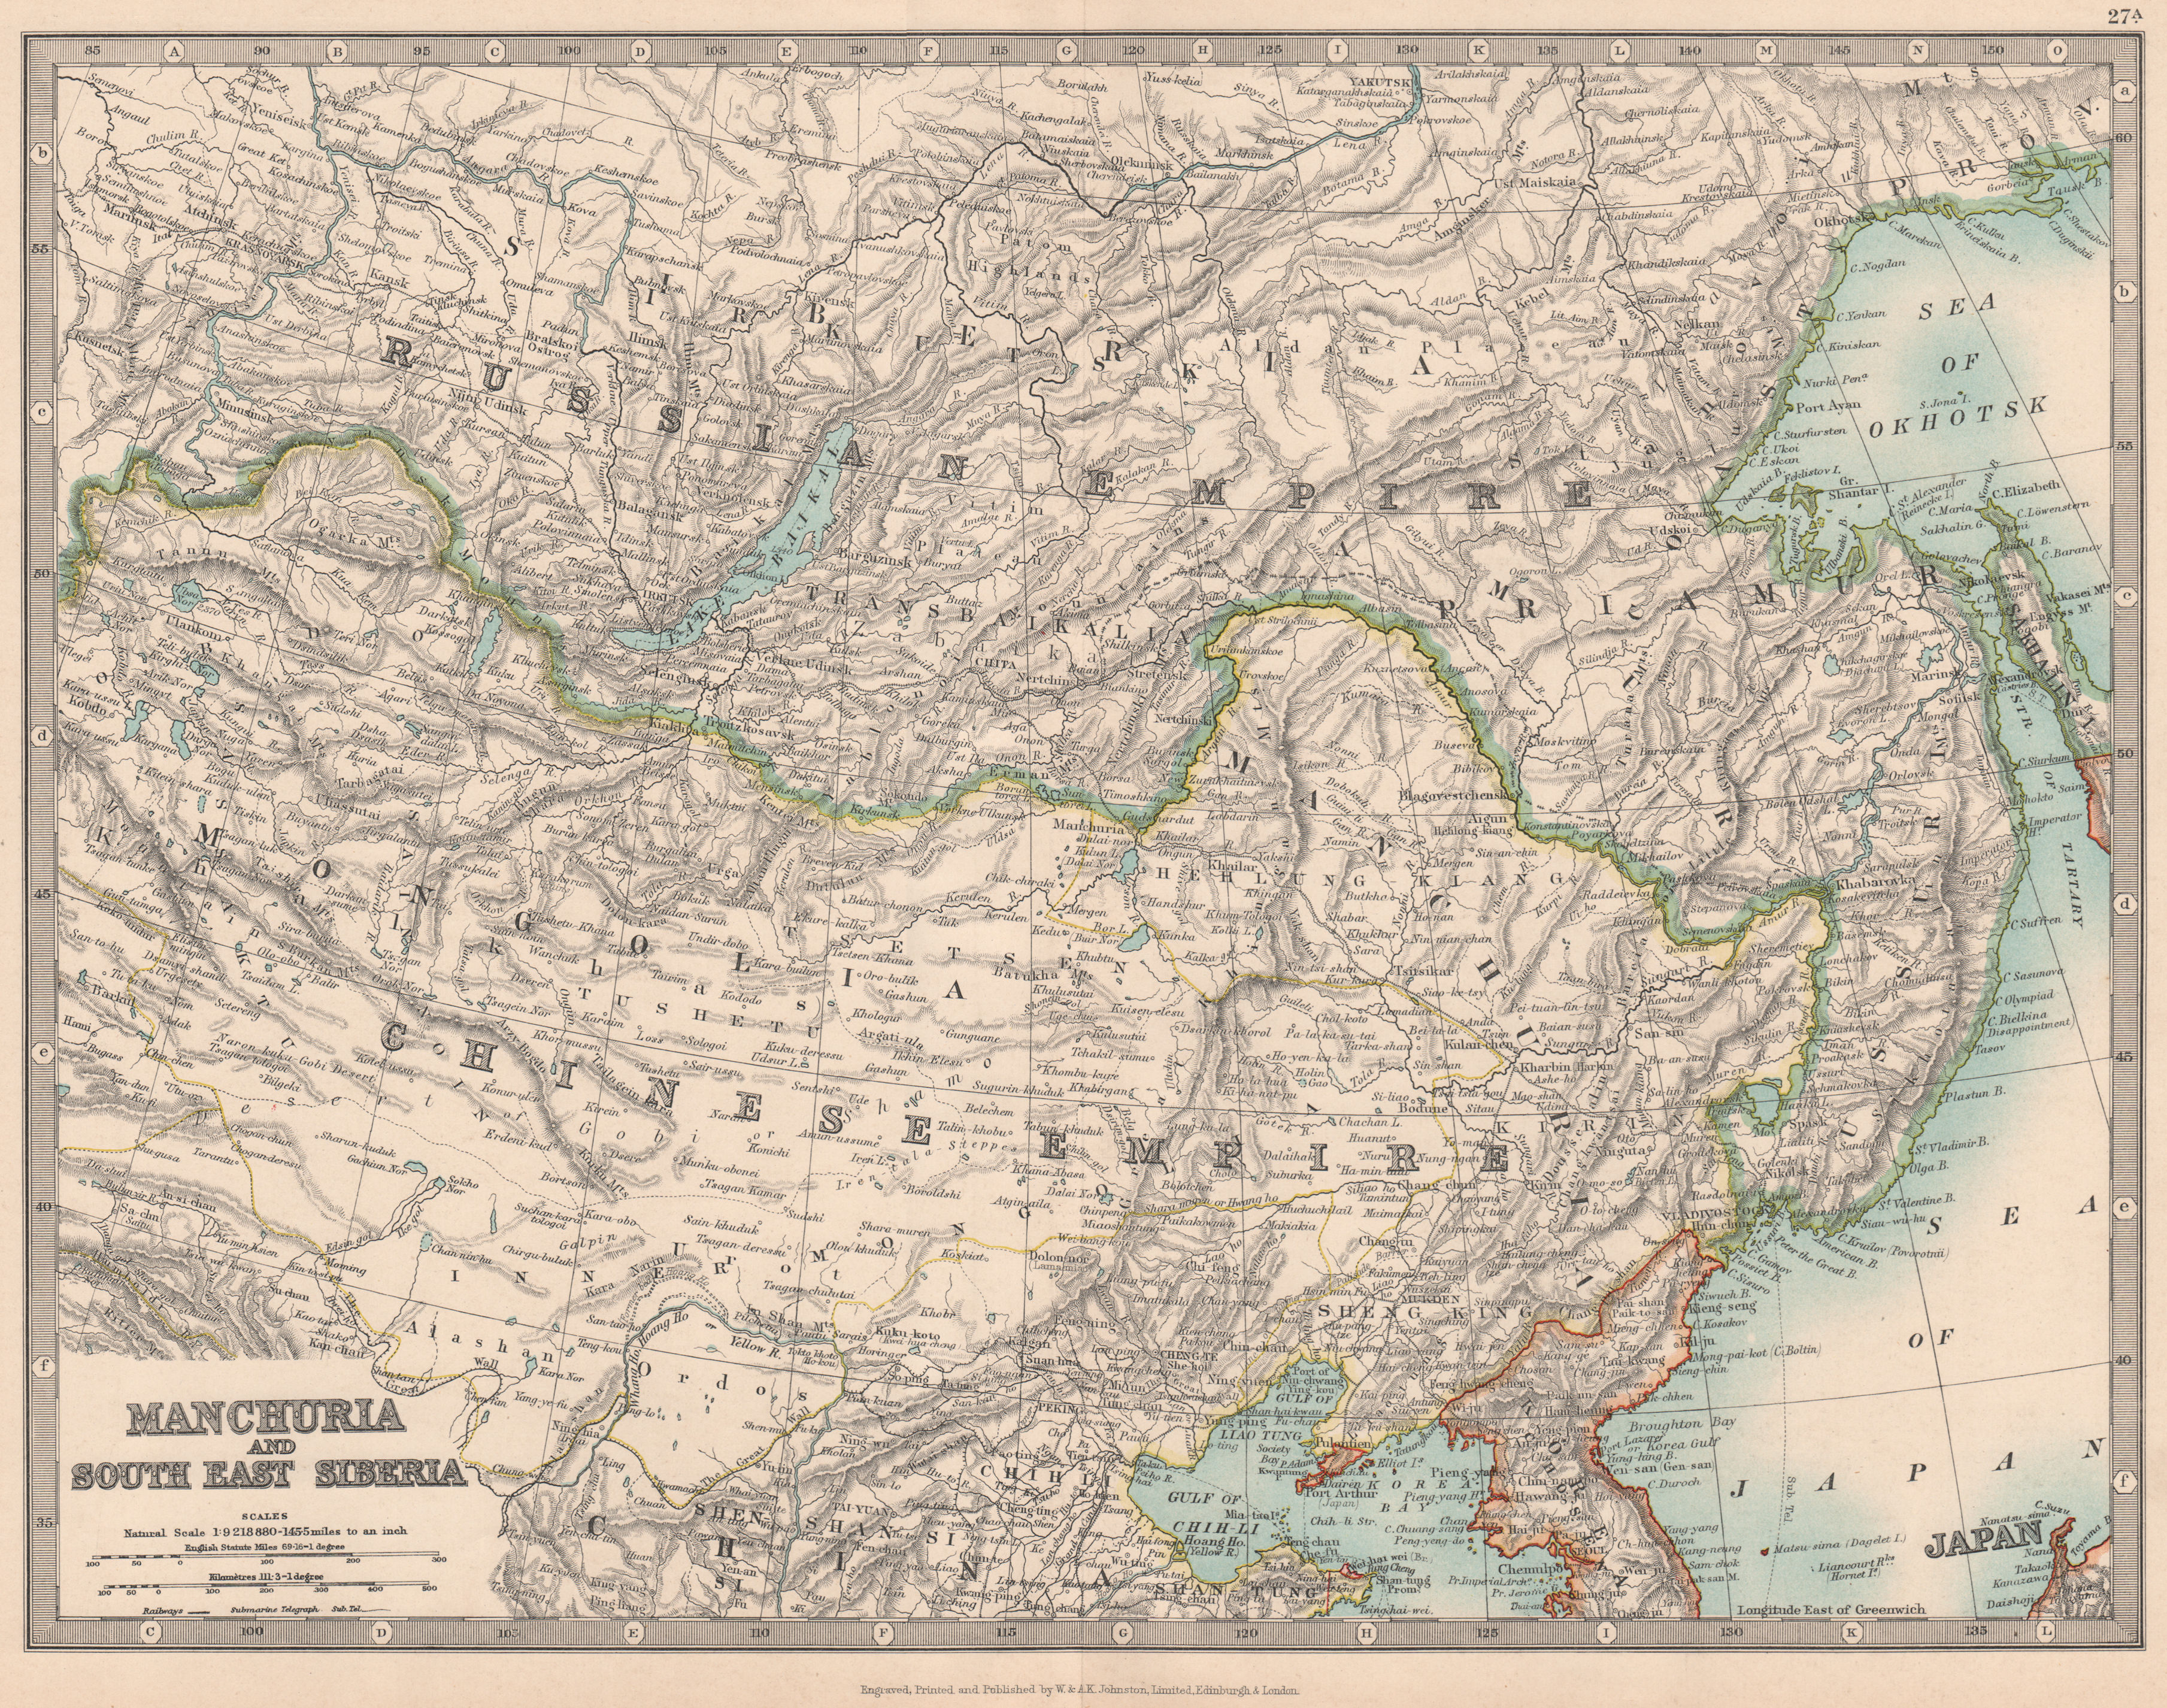 Associate Product MANCHURIA & SOUTH EAST SIBERIA Mongolia China Russia East Asia JOHNSTON 1912 map